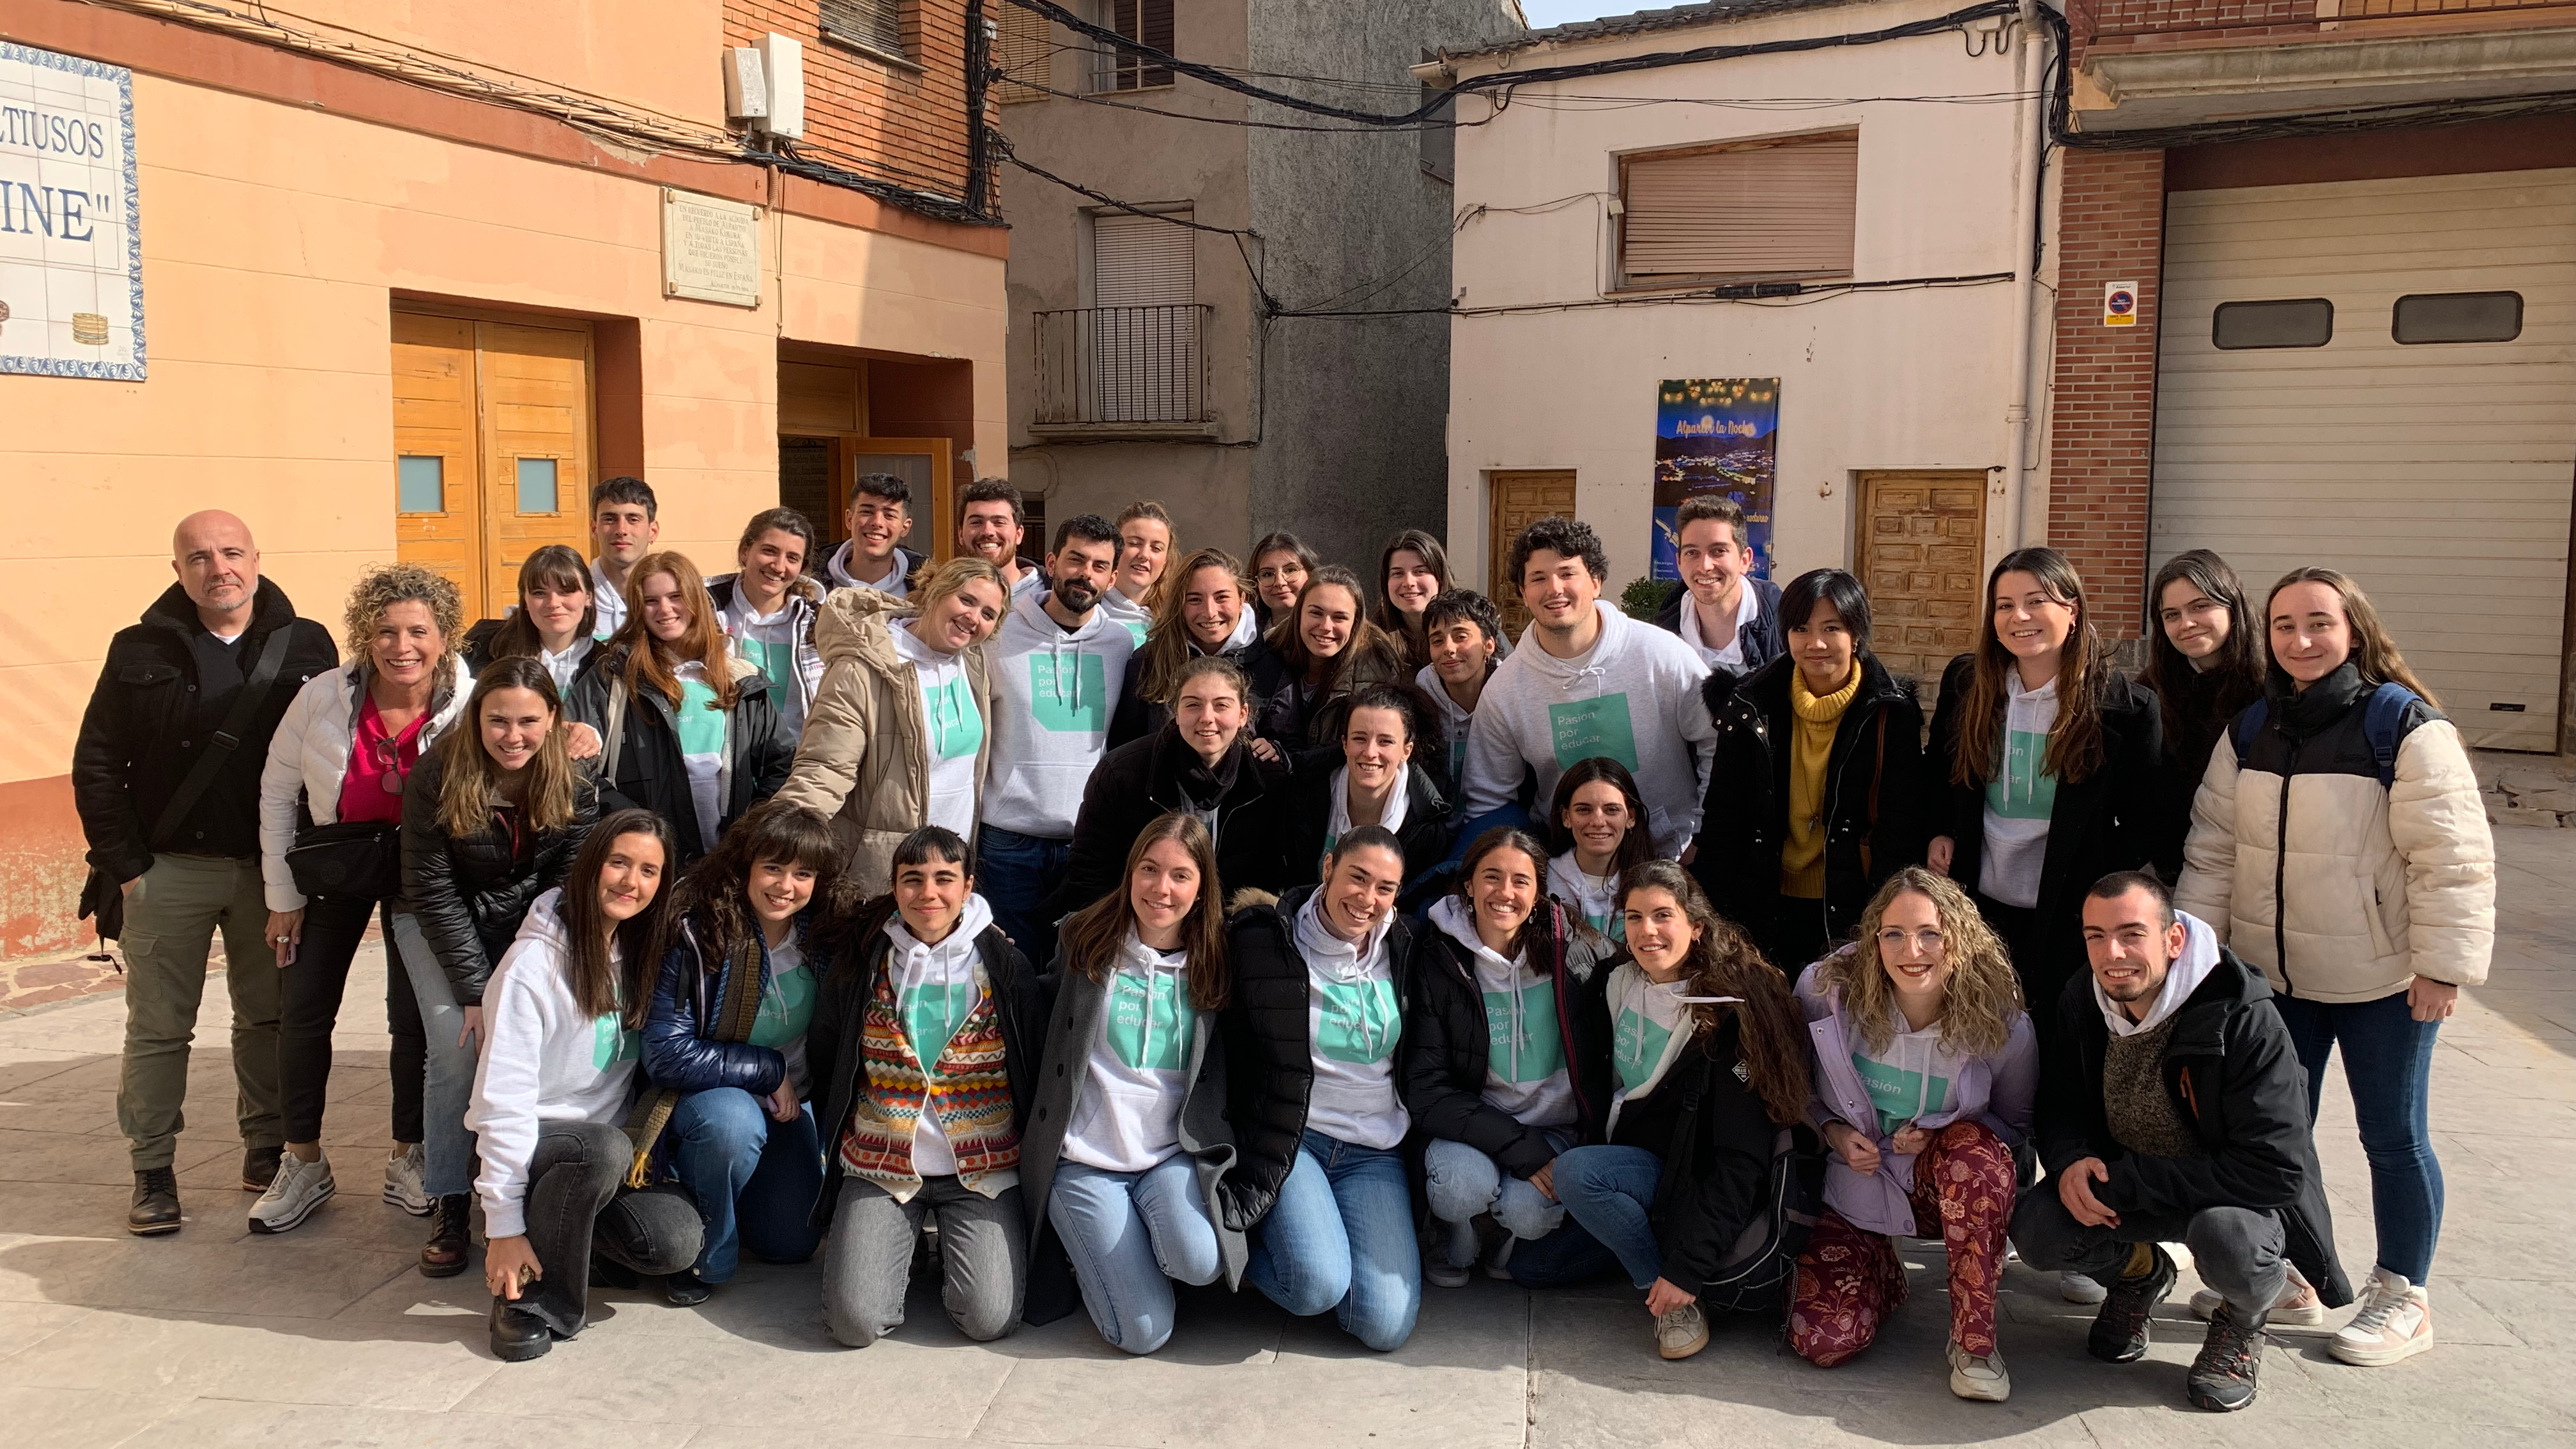 NUEVO VÍDEO: Recordamos los mejores momentos de la Expedición Pedagógica a Aragón